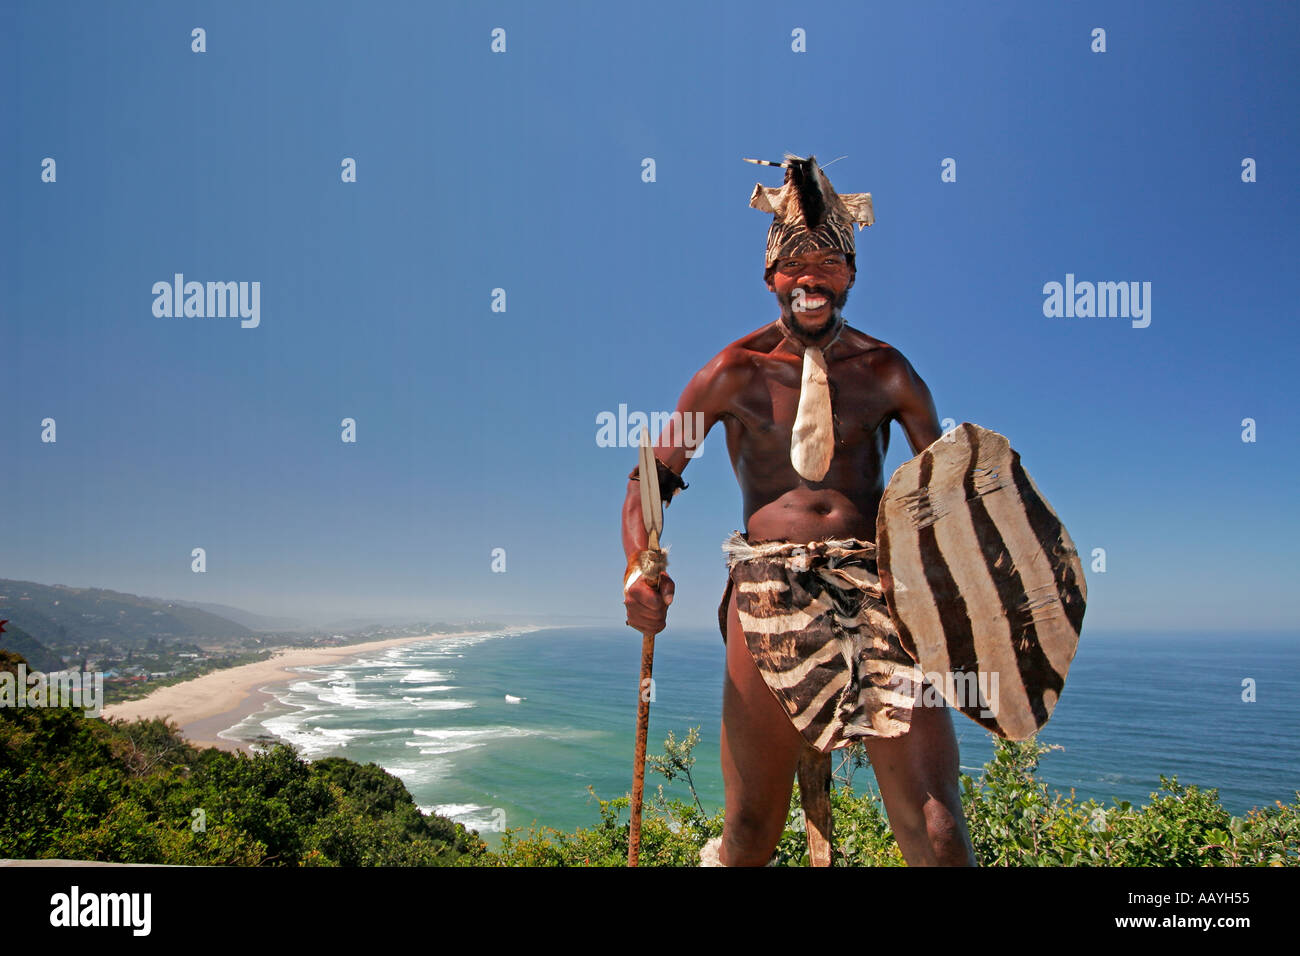 Südafrika-Garden route African in traditioneller Tracht posiert für Touristen Sicht Wildnis Strand Stockfoto